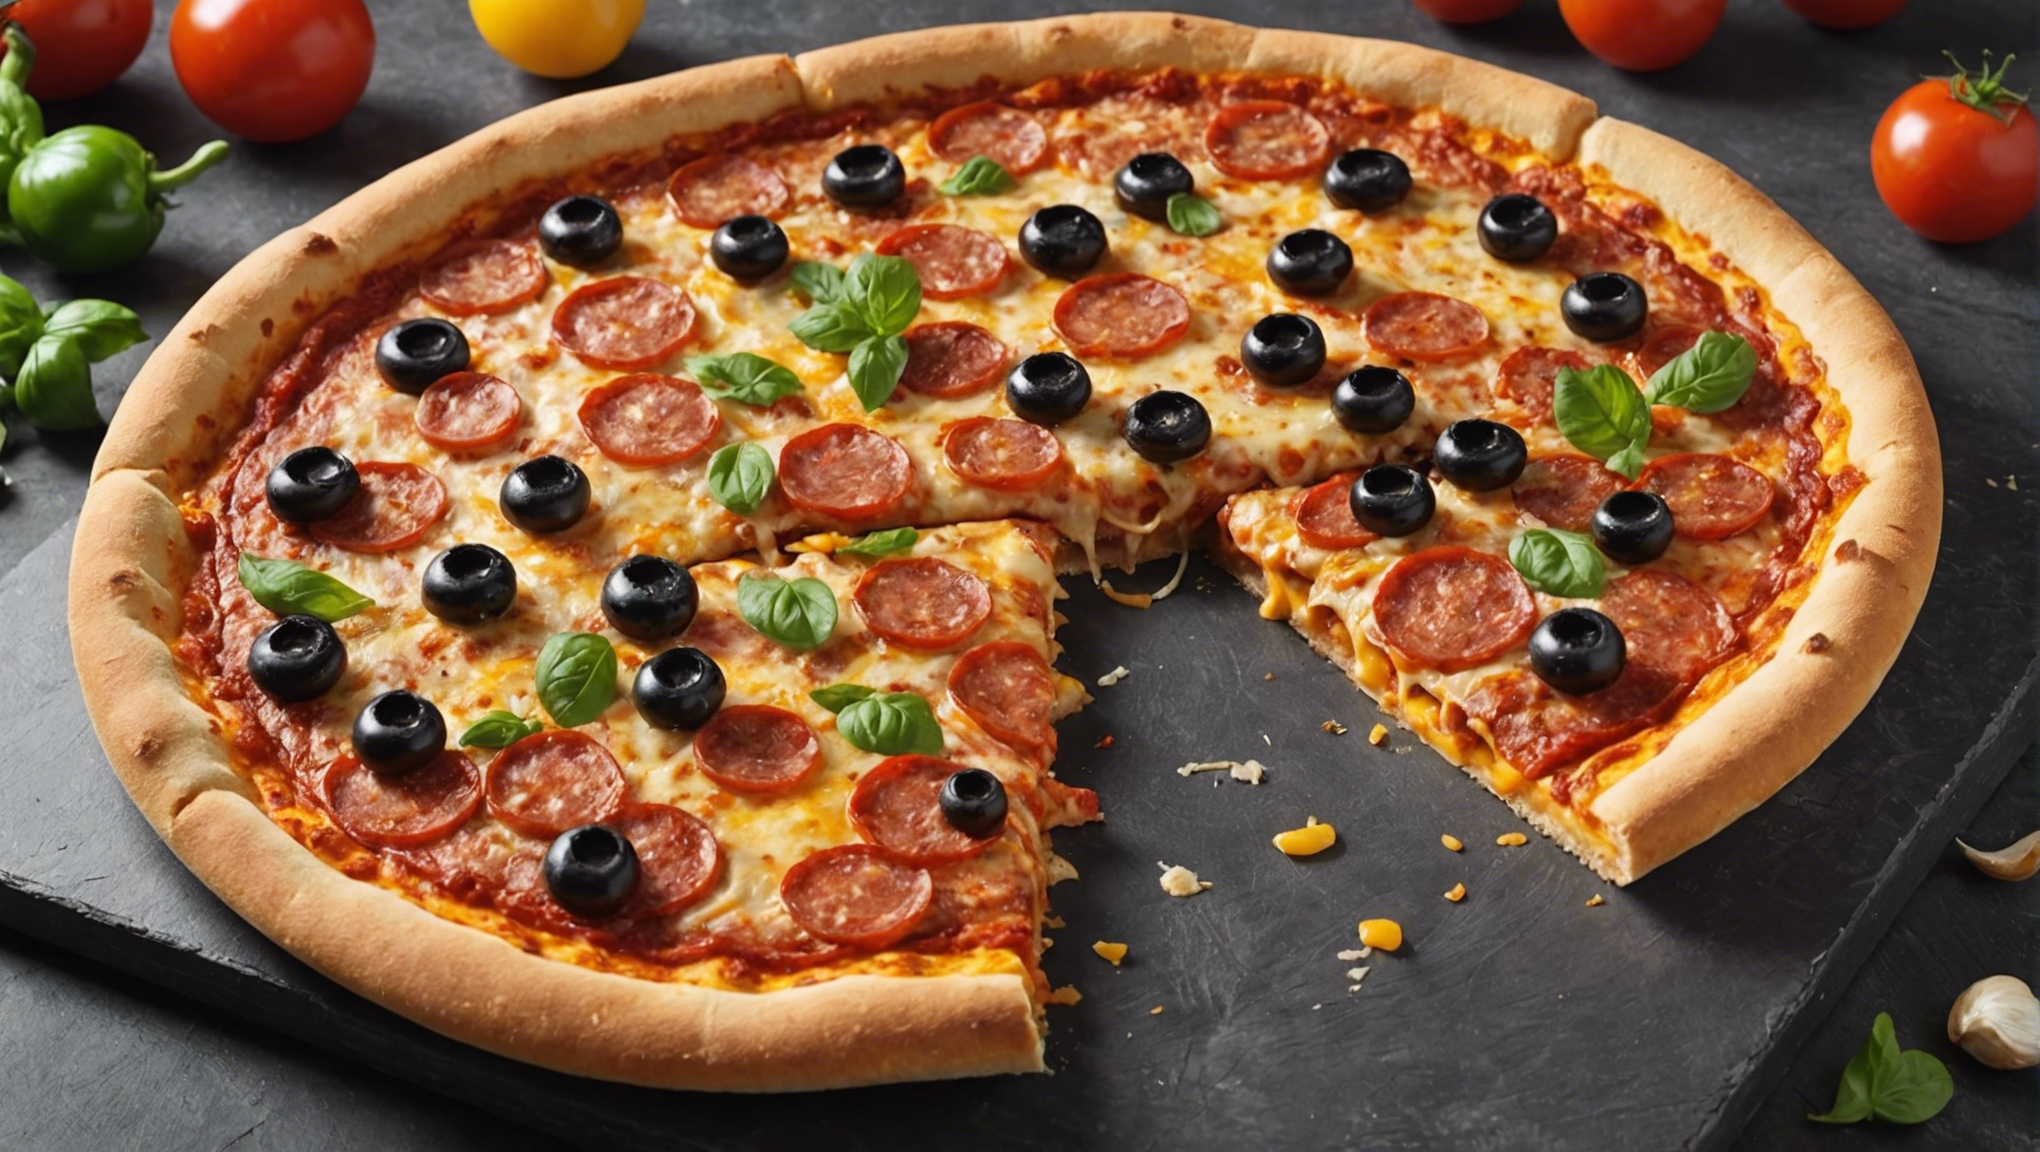 découvrez le dernier modèle de four à pizza de chez lidl, le meilleur choix pour vos soirées pizza entre ami(e)s !